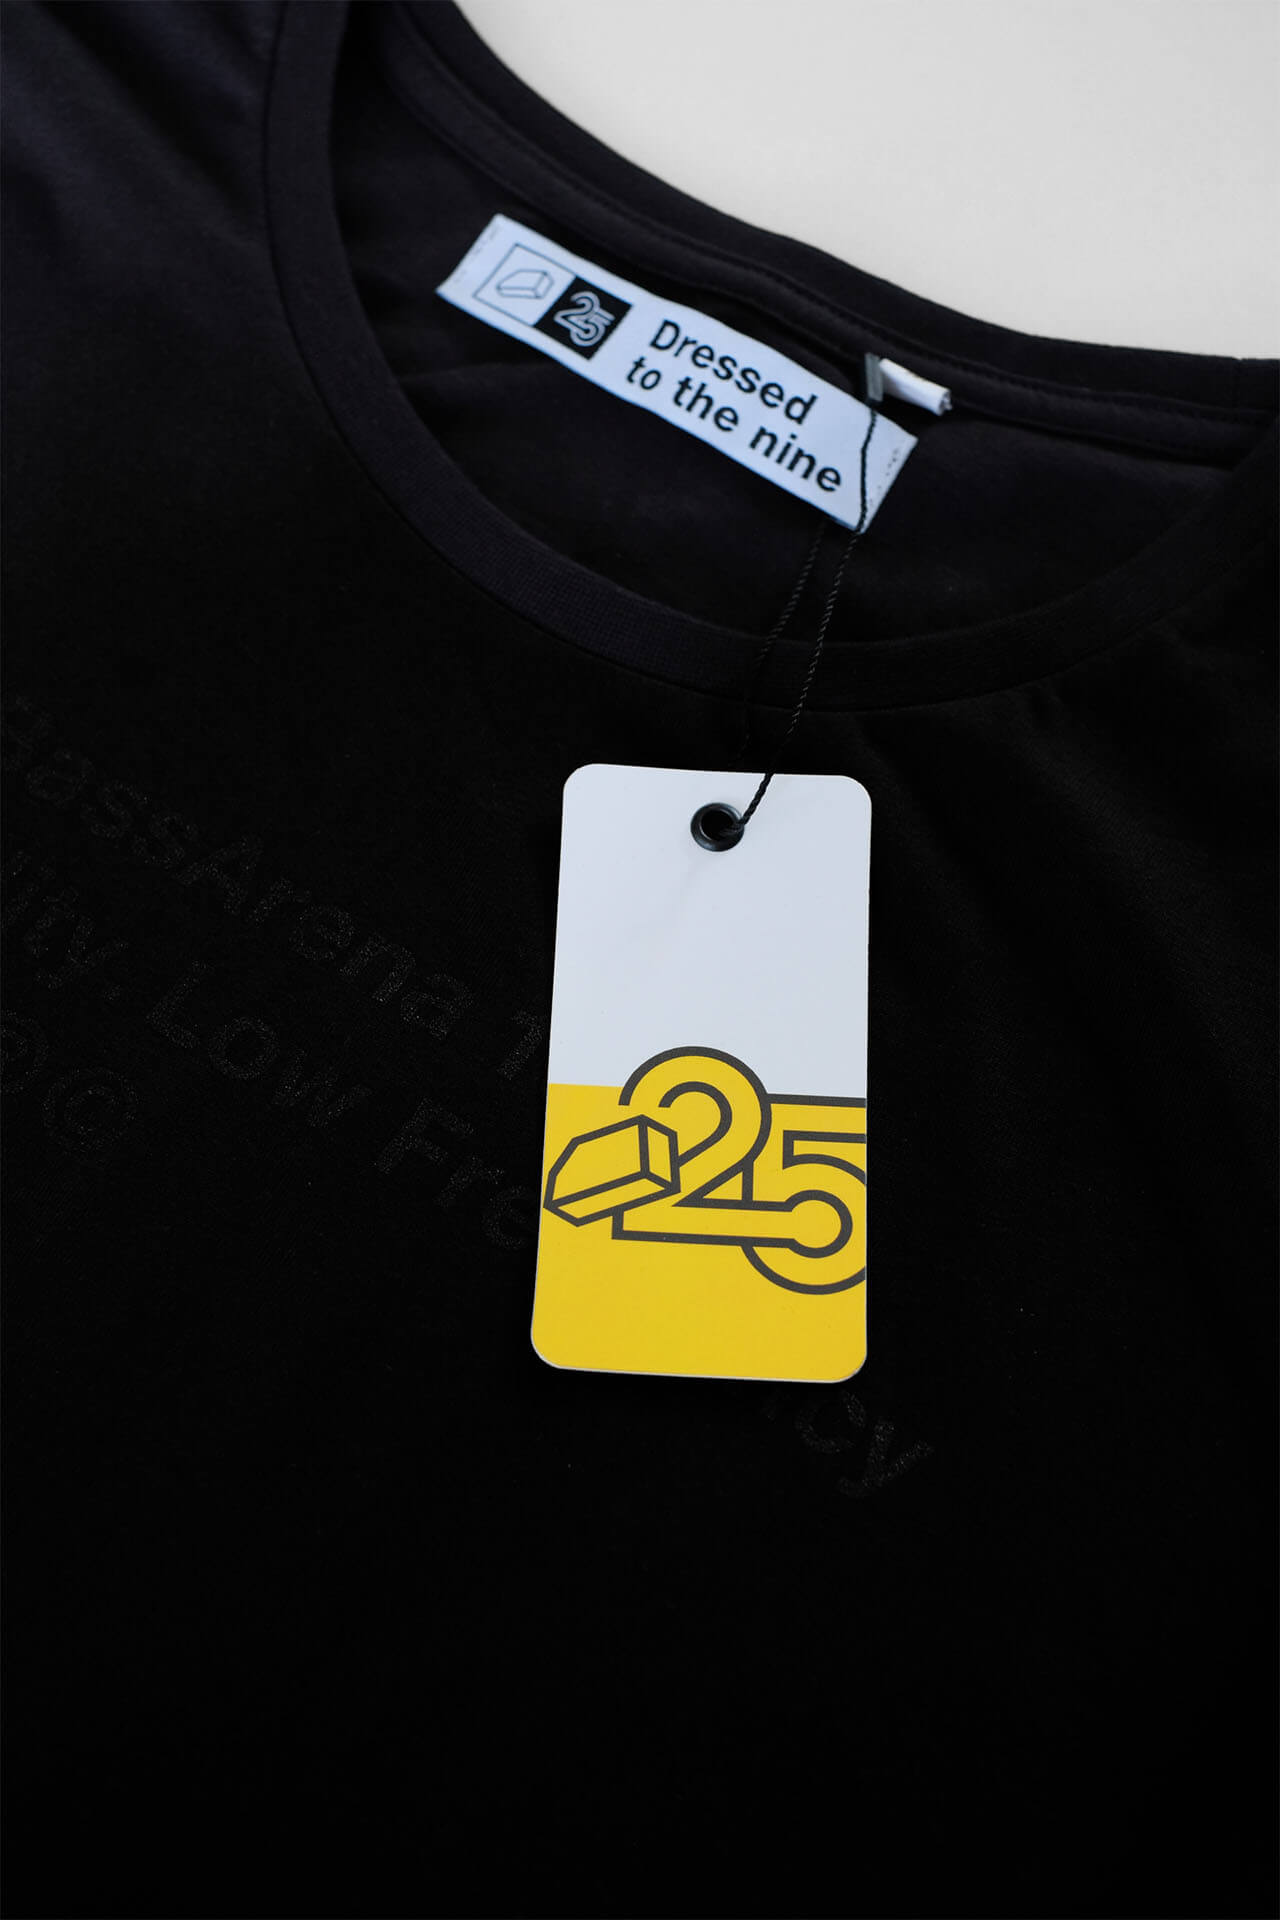 Limitovaná edice 25 let Stealth tričko (dámské)